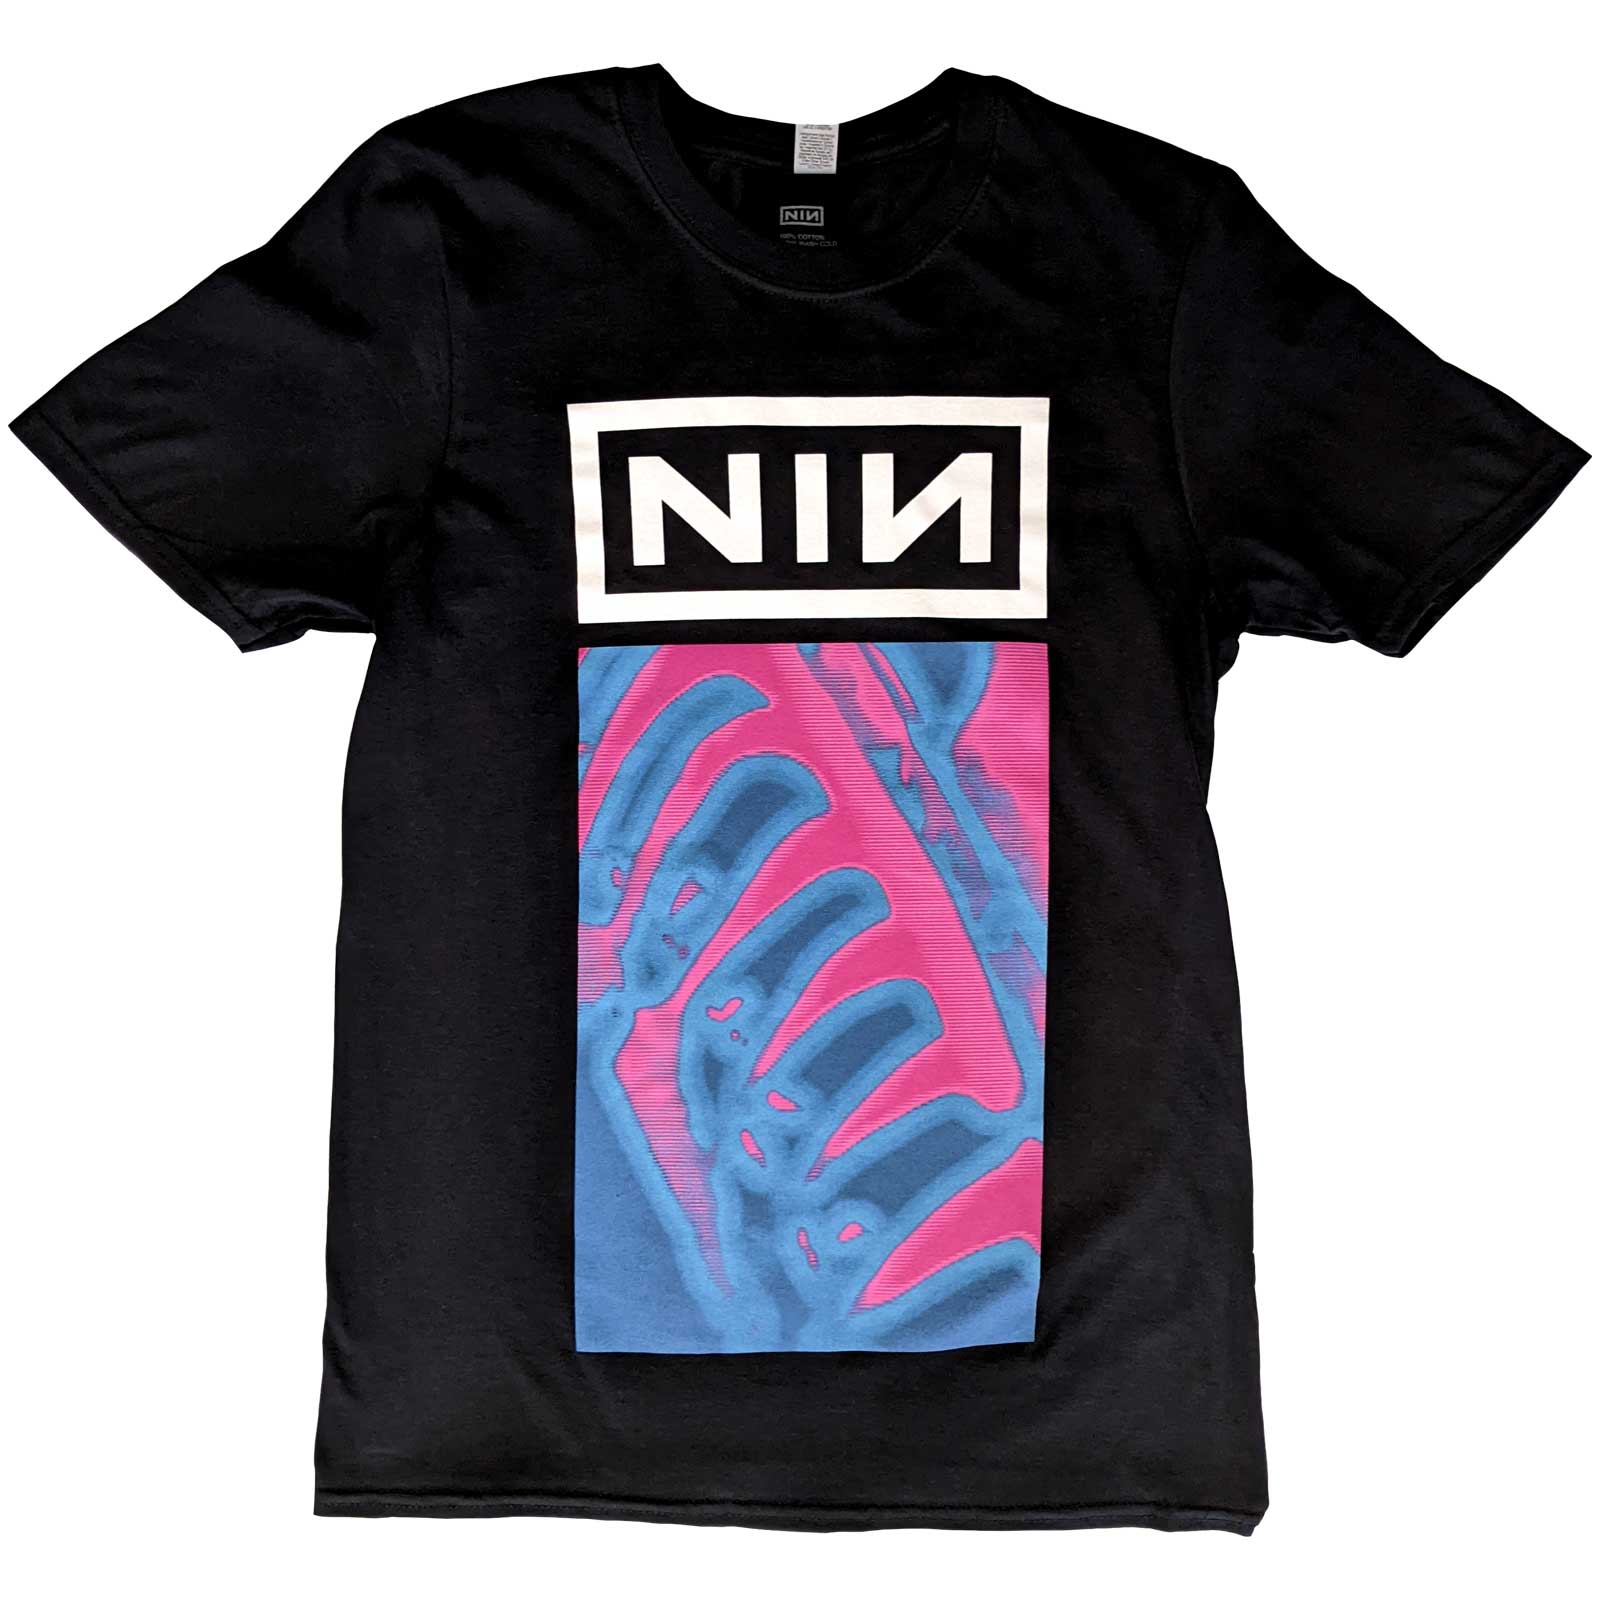 Nine Inch Nails - Pretty Hate Machine Neon